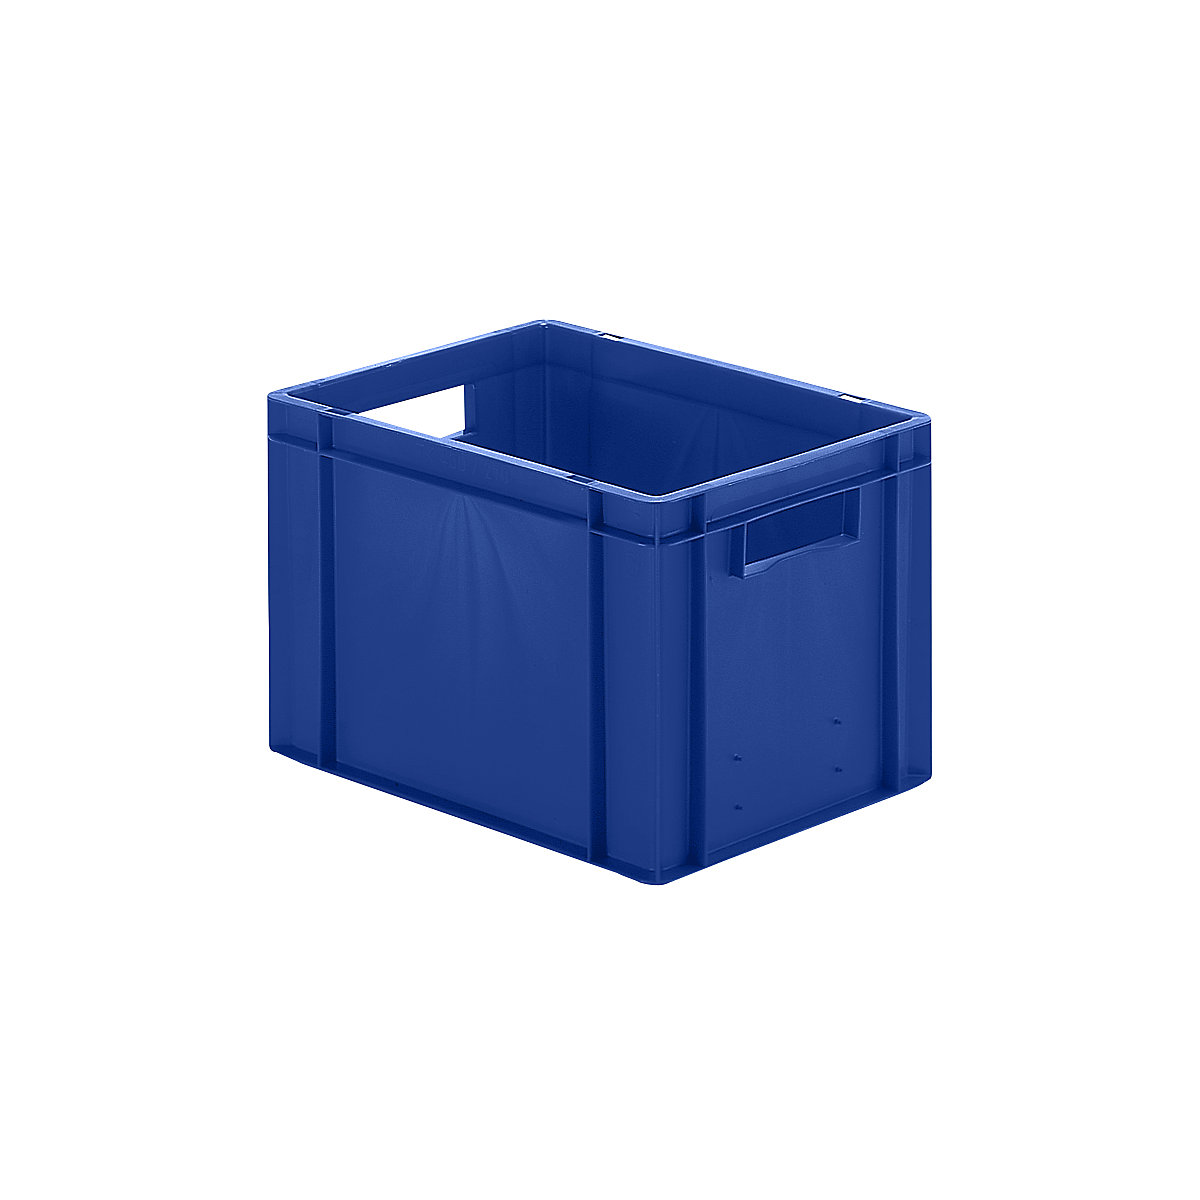 Euro-Format-Stapelbehälter, Wände und Boden geschlossen, LxBxH 400 x 300 x 270 mm, blau, VE 5 Stk